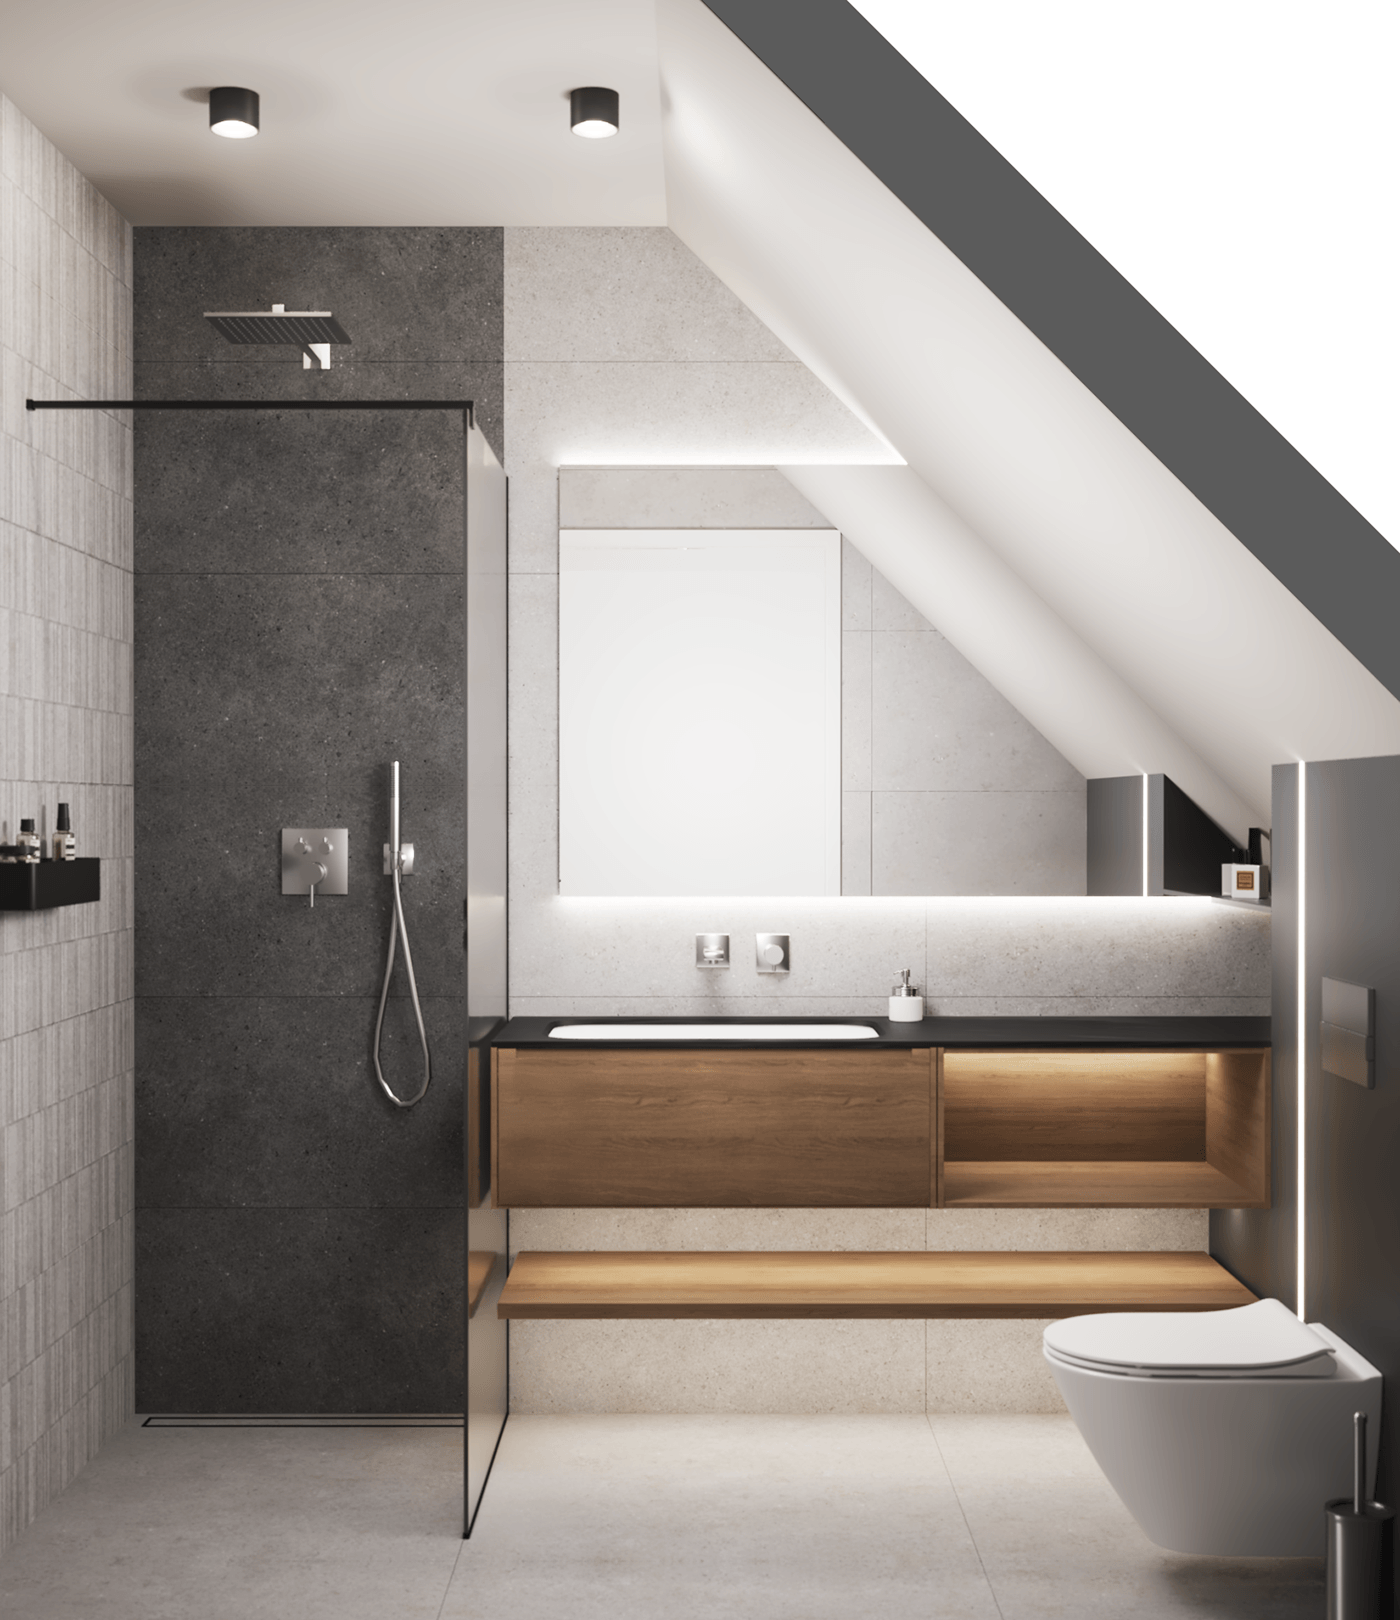 SHOWER bathroom design interior design  modern visualization 3ds max Render architecture 3D